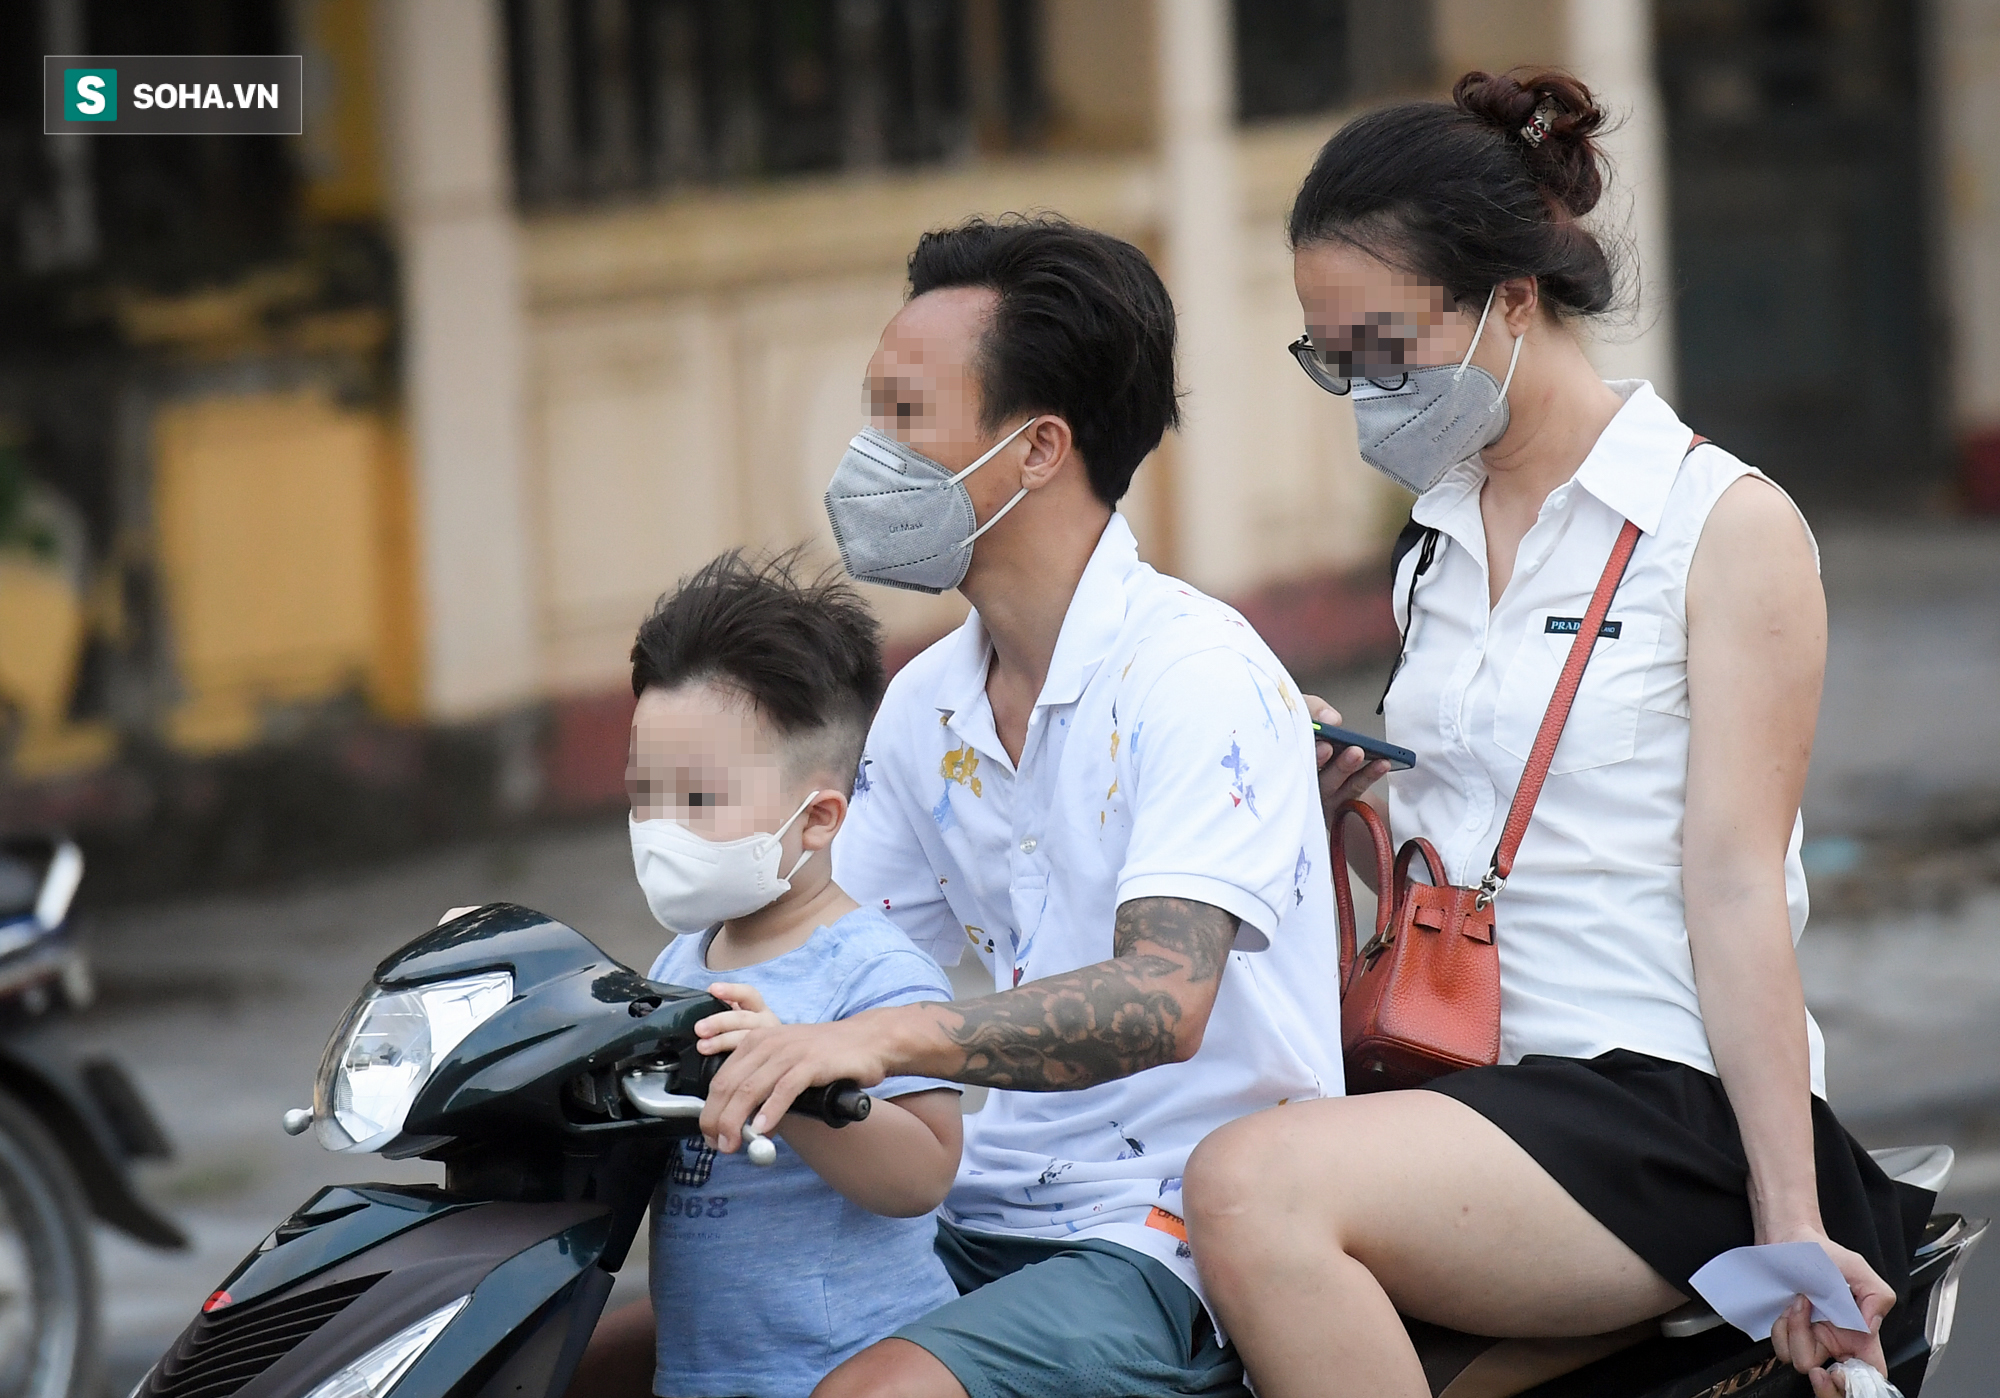 Ra đường mùa dịch: Nhiều người ở Hà Nội nhớ khẩu trang nhưng quên luật giao thông - Ảnh 4.